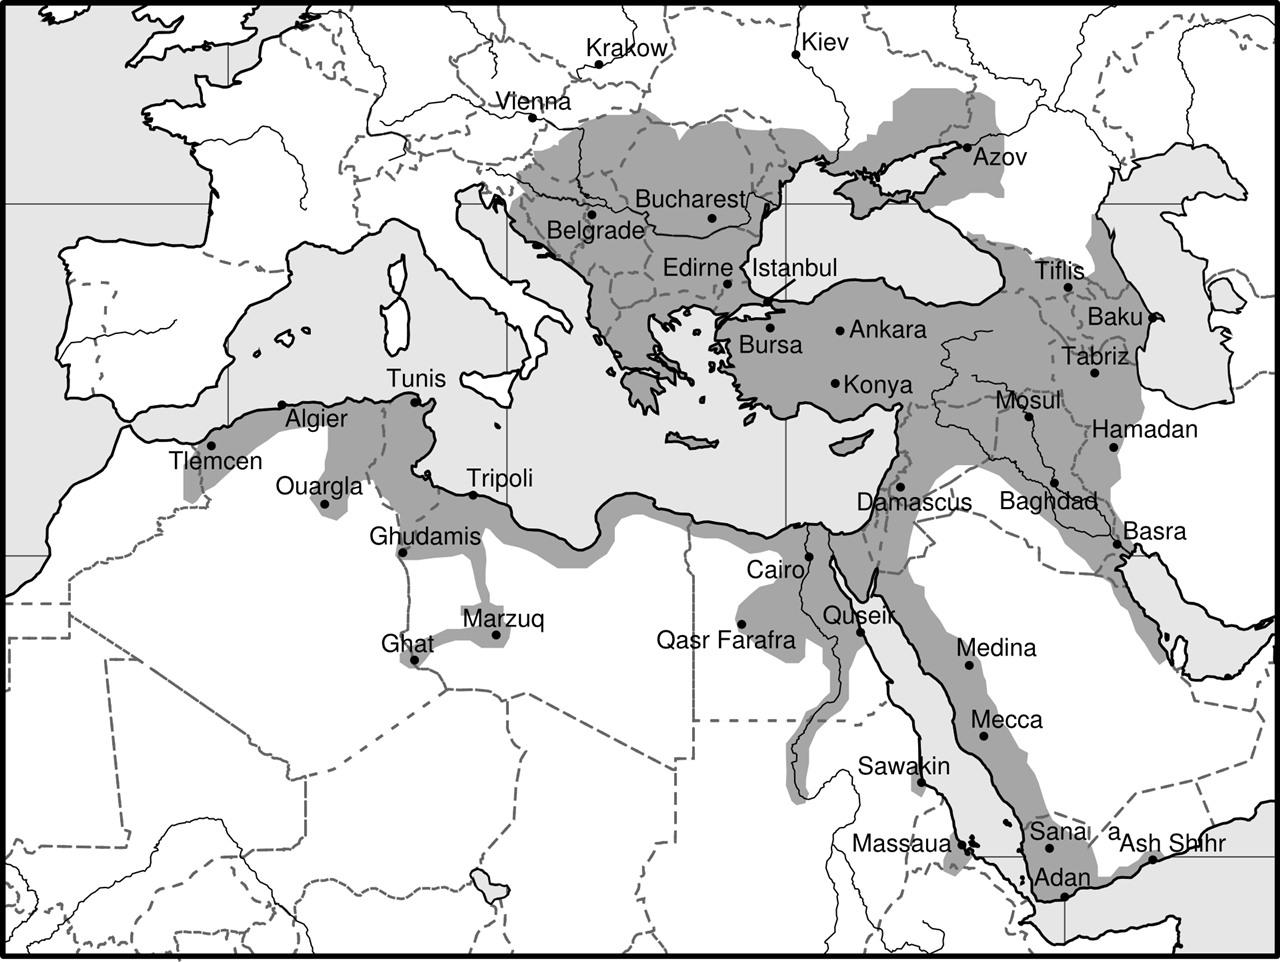 奥斯曼帝国中后期的状况是什么样的?